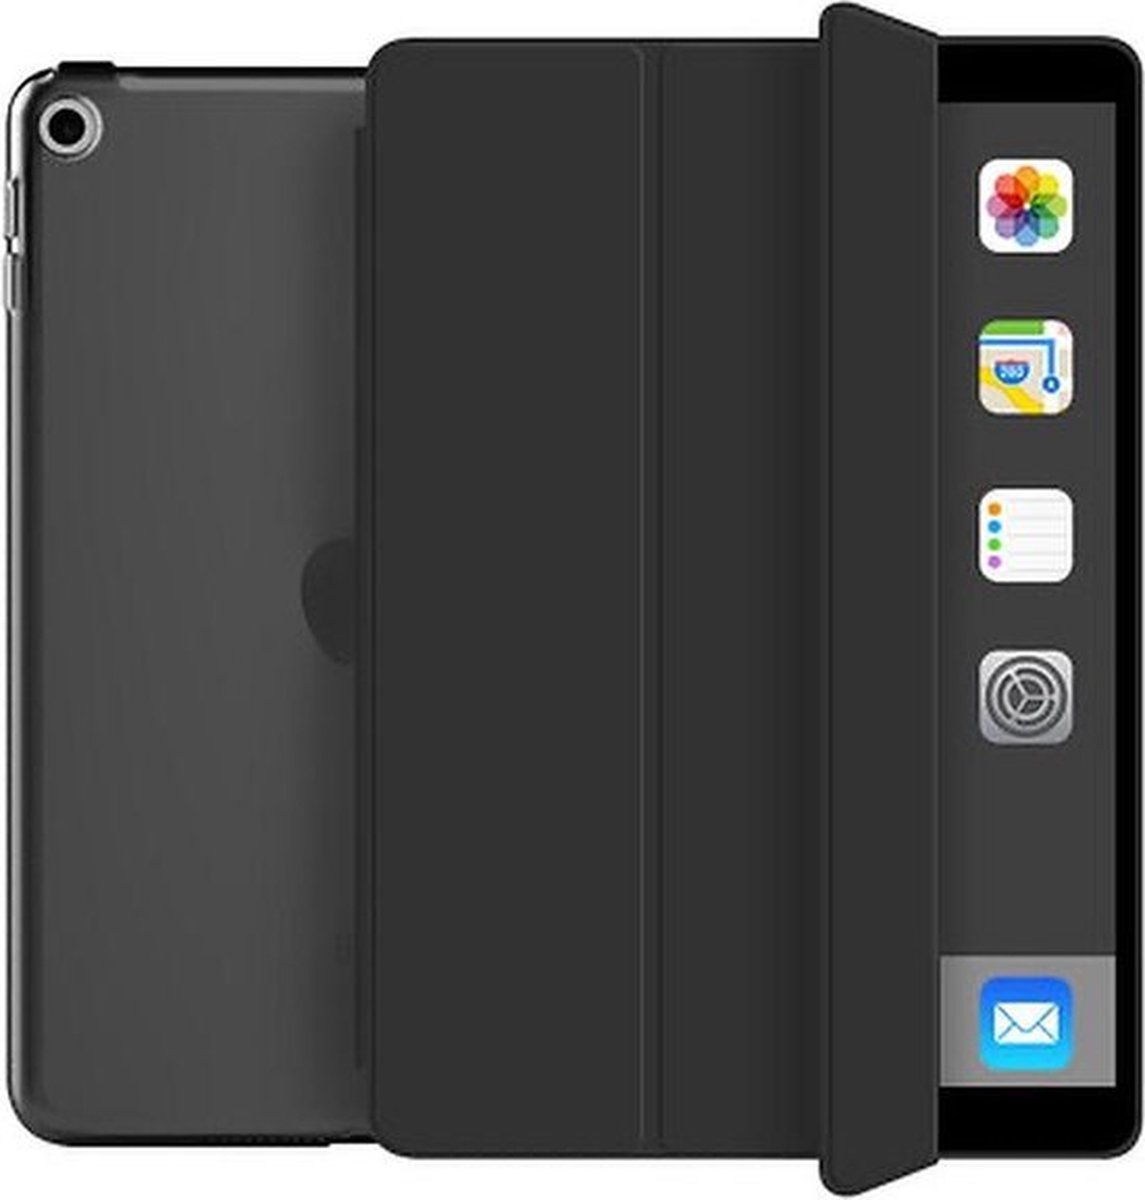 Ipad 5/6 hardcover (2017/2018) - 9.7 inch – Ipad hoes – hard cover – Hoes voor iPad – Tablet beschermer - zwart